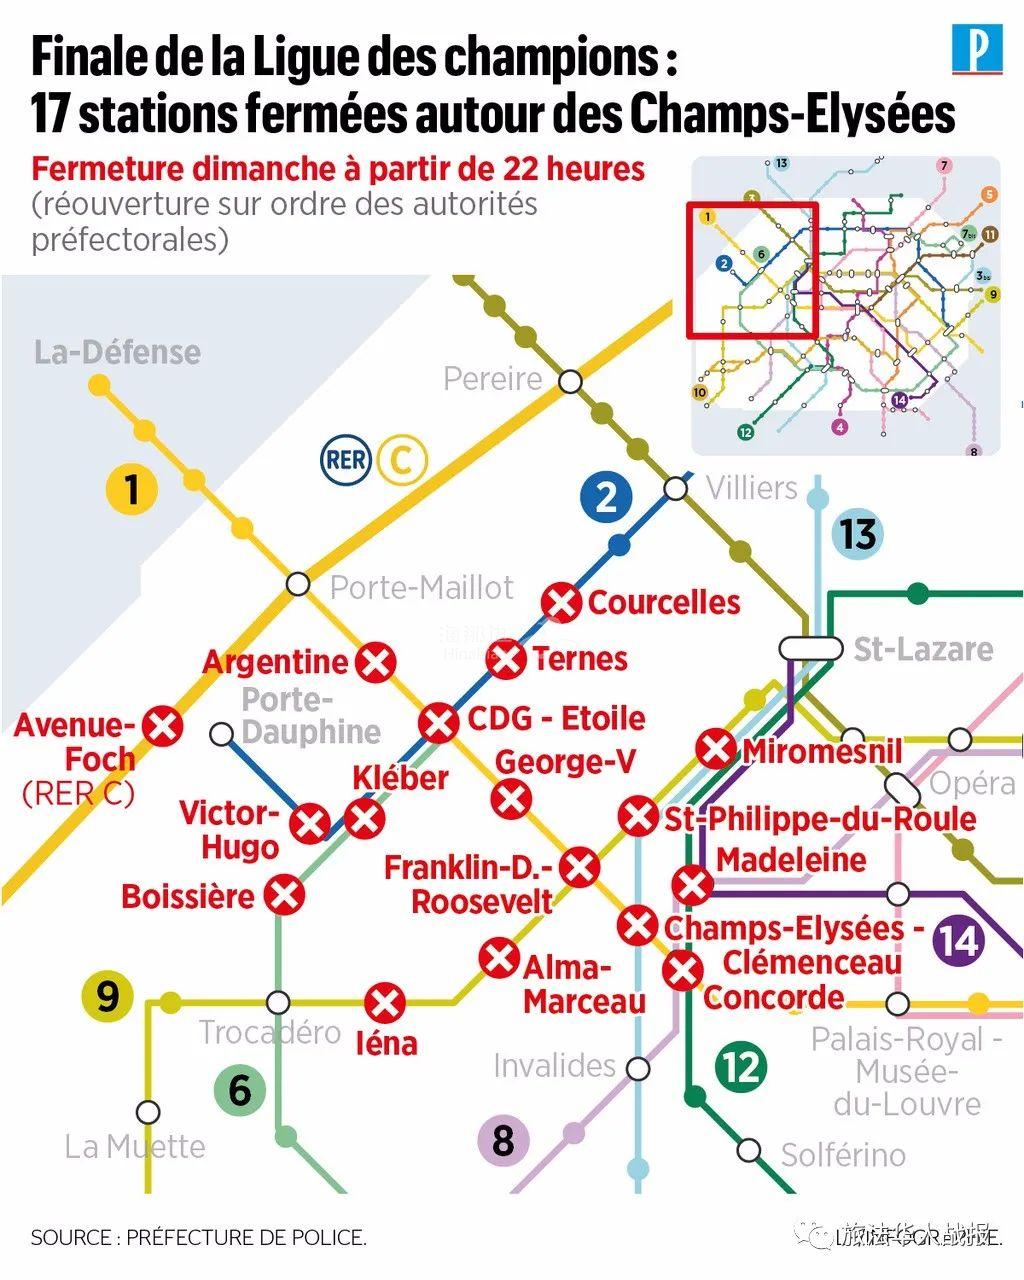 法国日增3602例明晚巴黎布署3000警力严防死守关闭17个地铁站